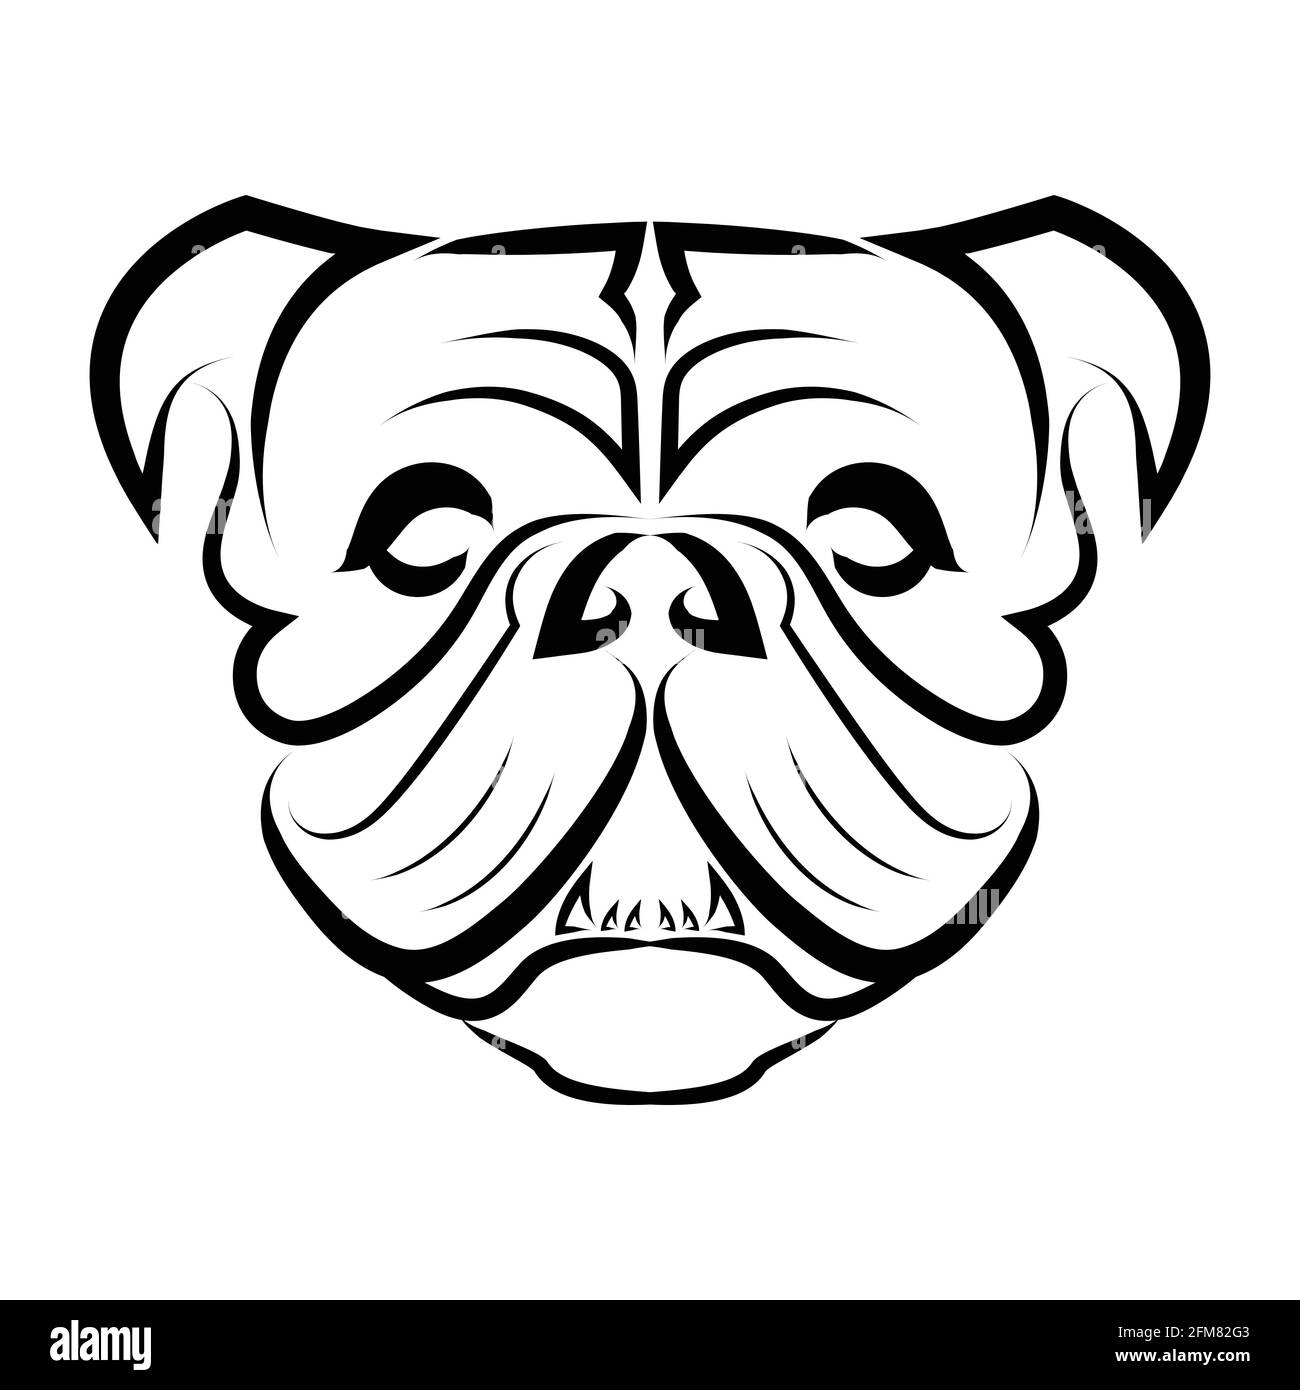 Dessin noir et blanc de la tête de chien bulldog ou de chien pug. Bon usage pour symbole, mascotte, icône, avatar, tatouage, T-shirt, logo ou tout autre motif que vous voulez. Illustration de Vecteur